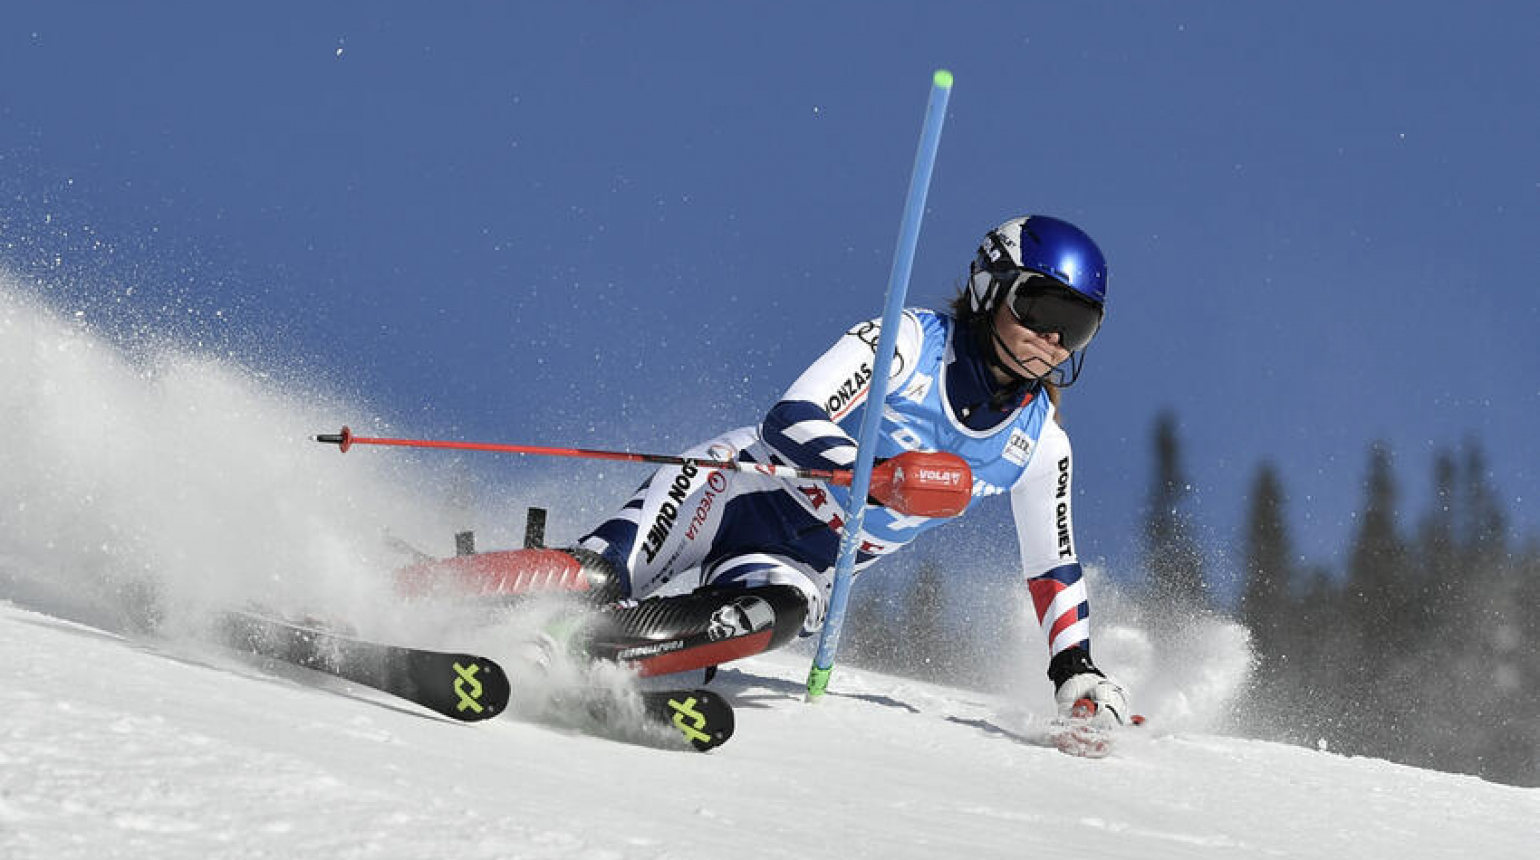 Finále Evropského poháru pokračovalo slalomem. Jelínková skončila ve třetí desítce, Sommerová nedokončila